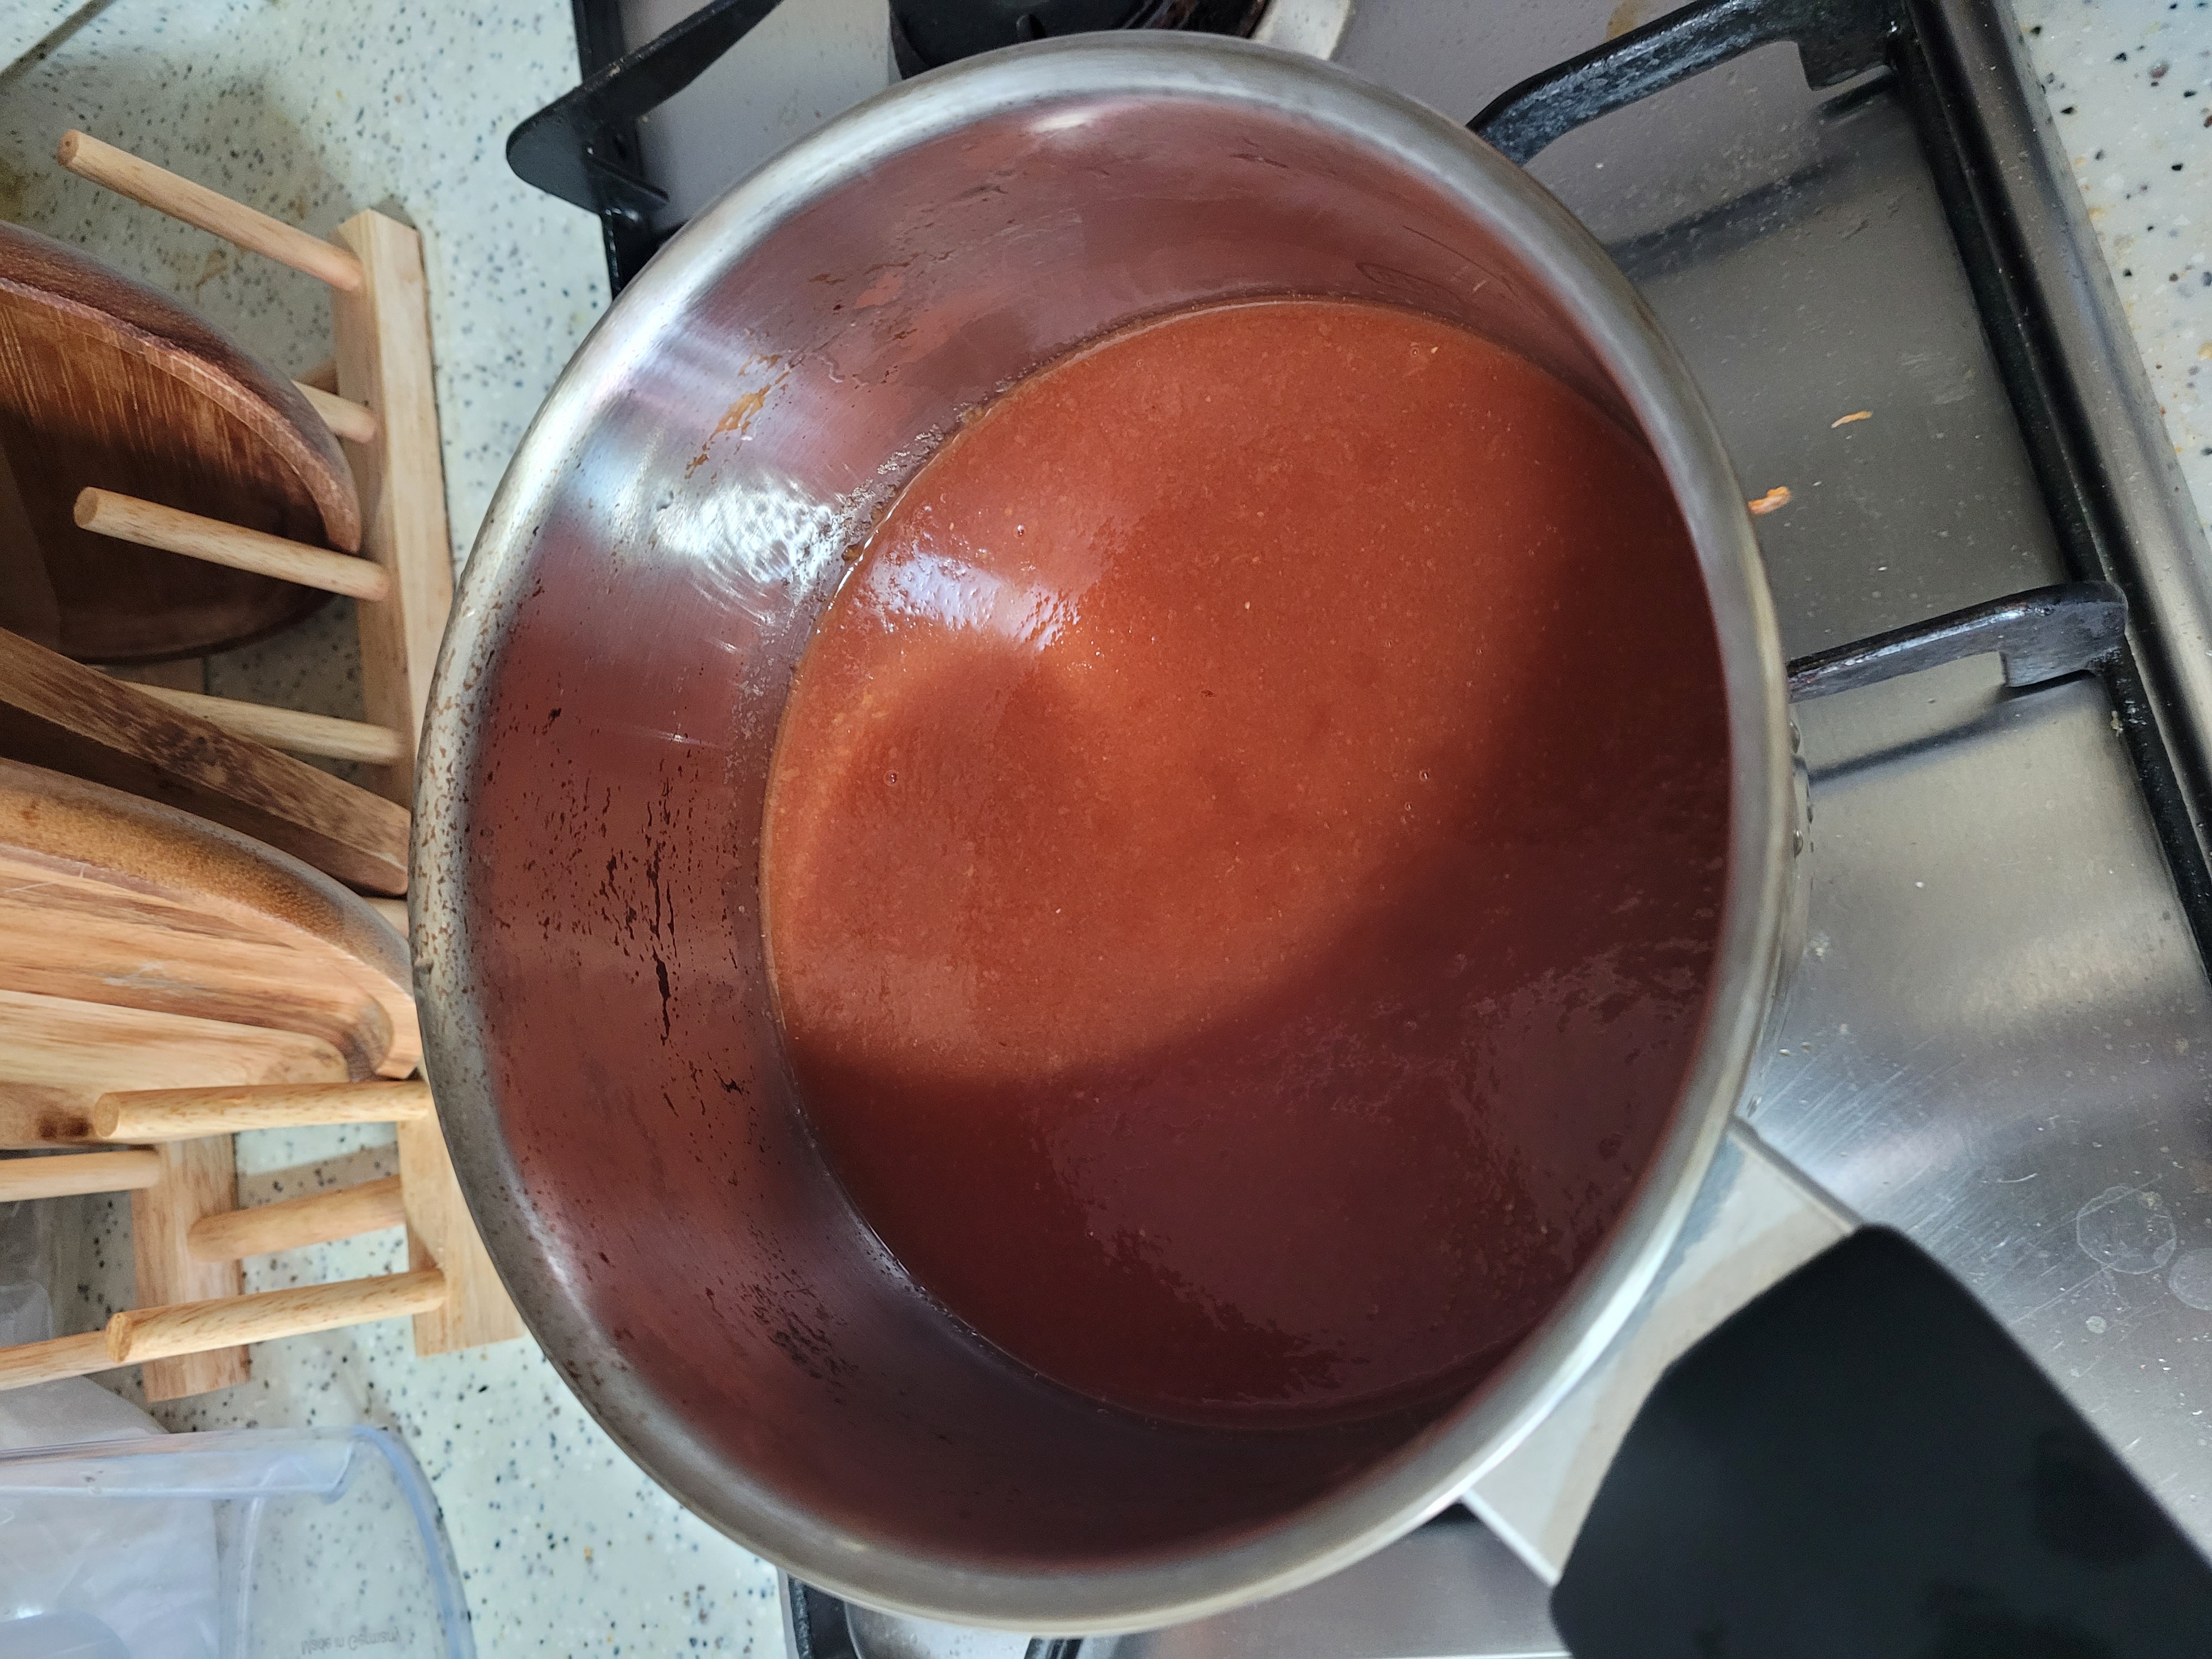 그런 다음 끓인 토마토를 채에 받쳐서 고운 입자만 아래로 빼낸다. 그러면 위에는 토마토 껍질 등의 찌꺼기만 남고 아래에는 아주 고운 토마토만 쏙 빠져나온다. 여기에 설탕을 잔뜩 넣고 사과 식초도 조금 넣고 섞은 다음 다시 약불로 10분 정도 끓여준다. 여기부터는 원하는 농도에 따라 가열 시간을 조절하면 되는 것 같다. 